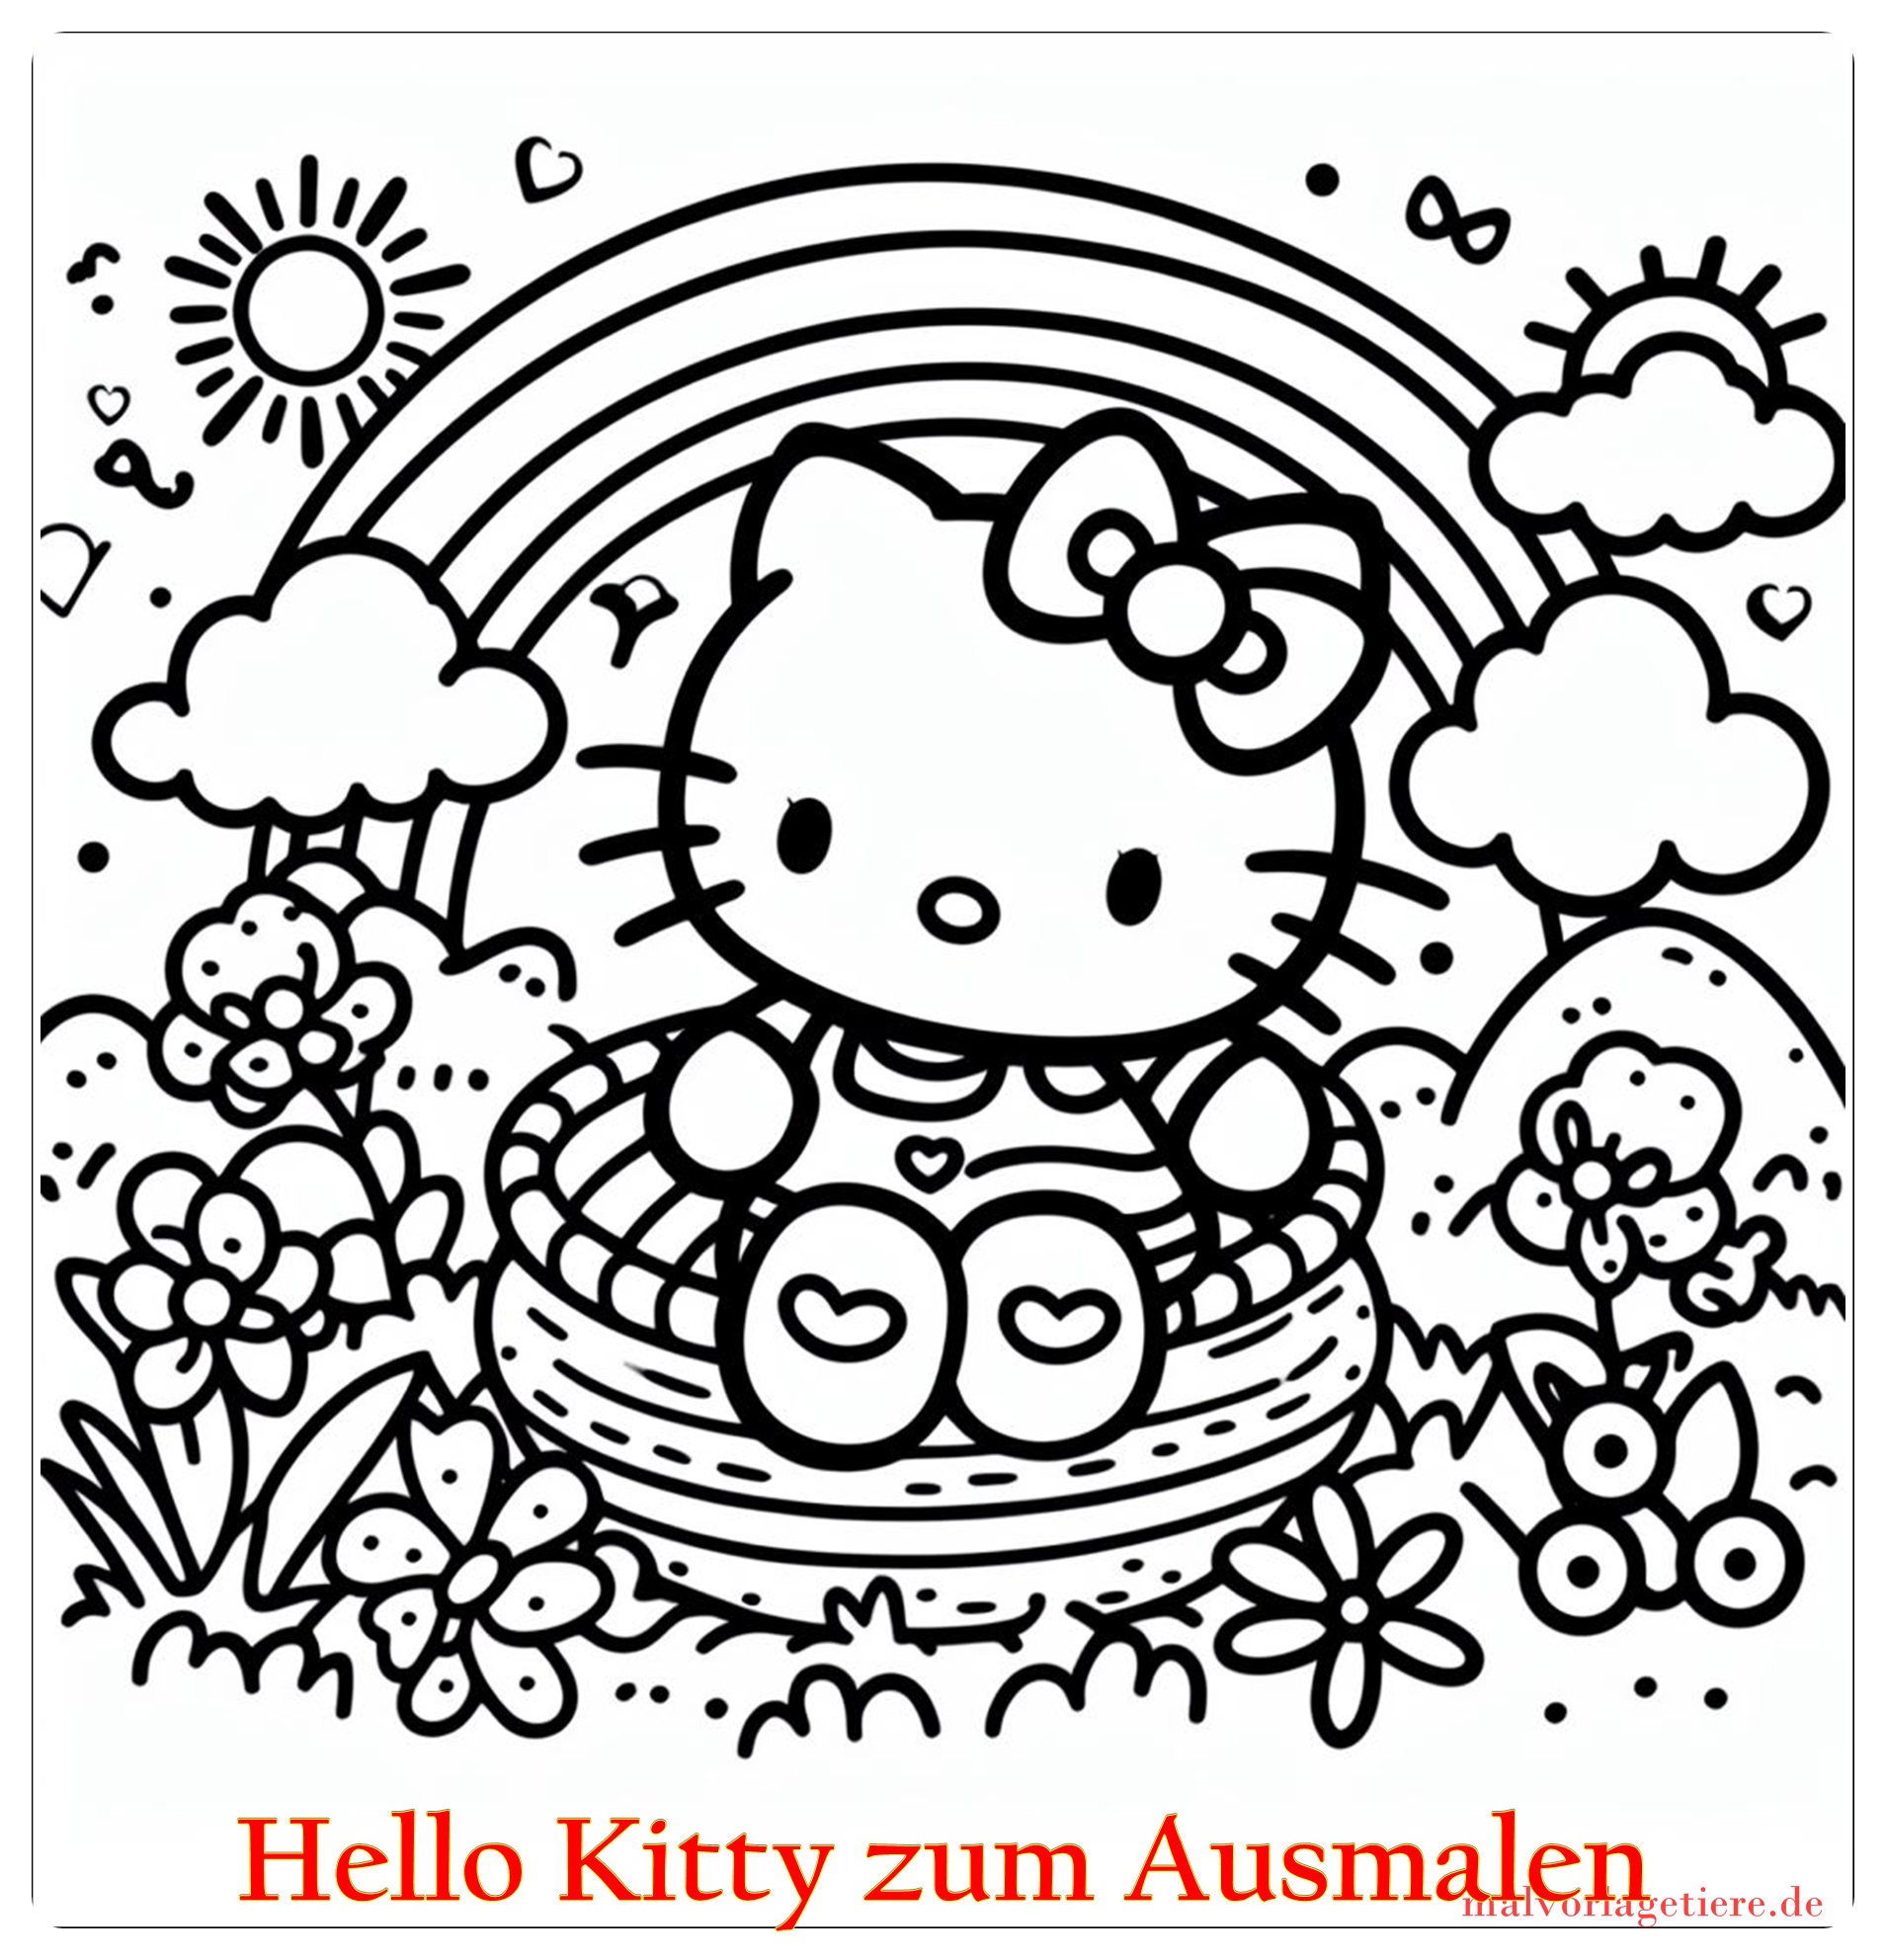 Hello Kitty zum Ausmalen 05 by malvorlagetiere